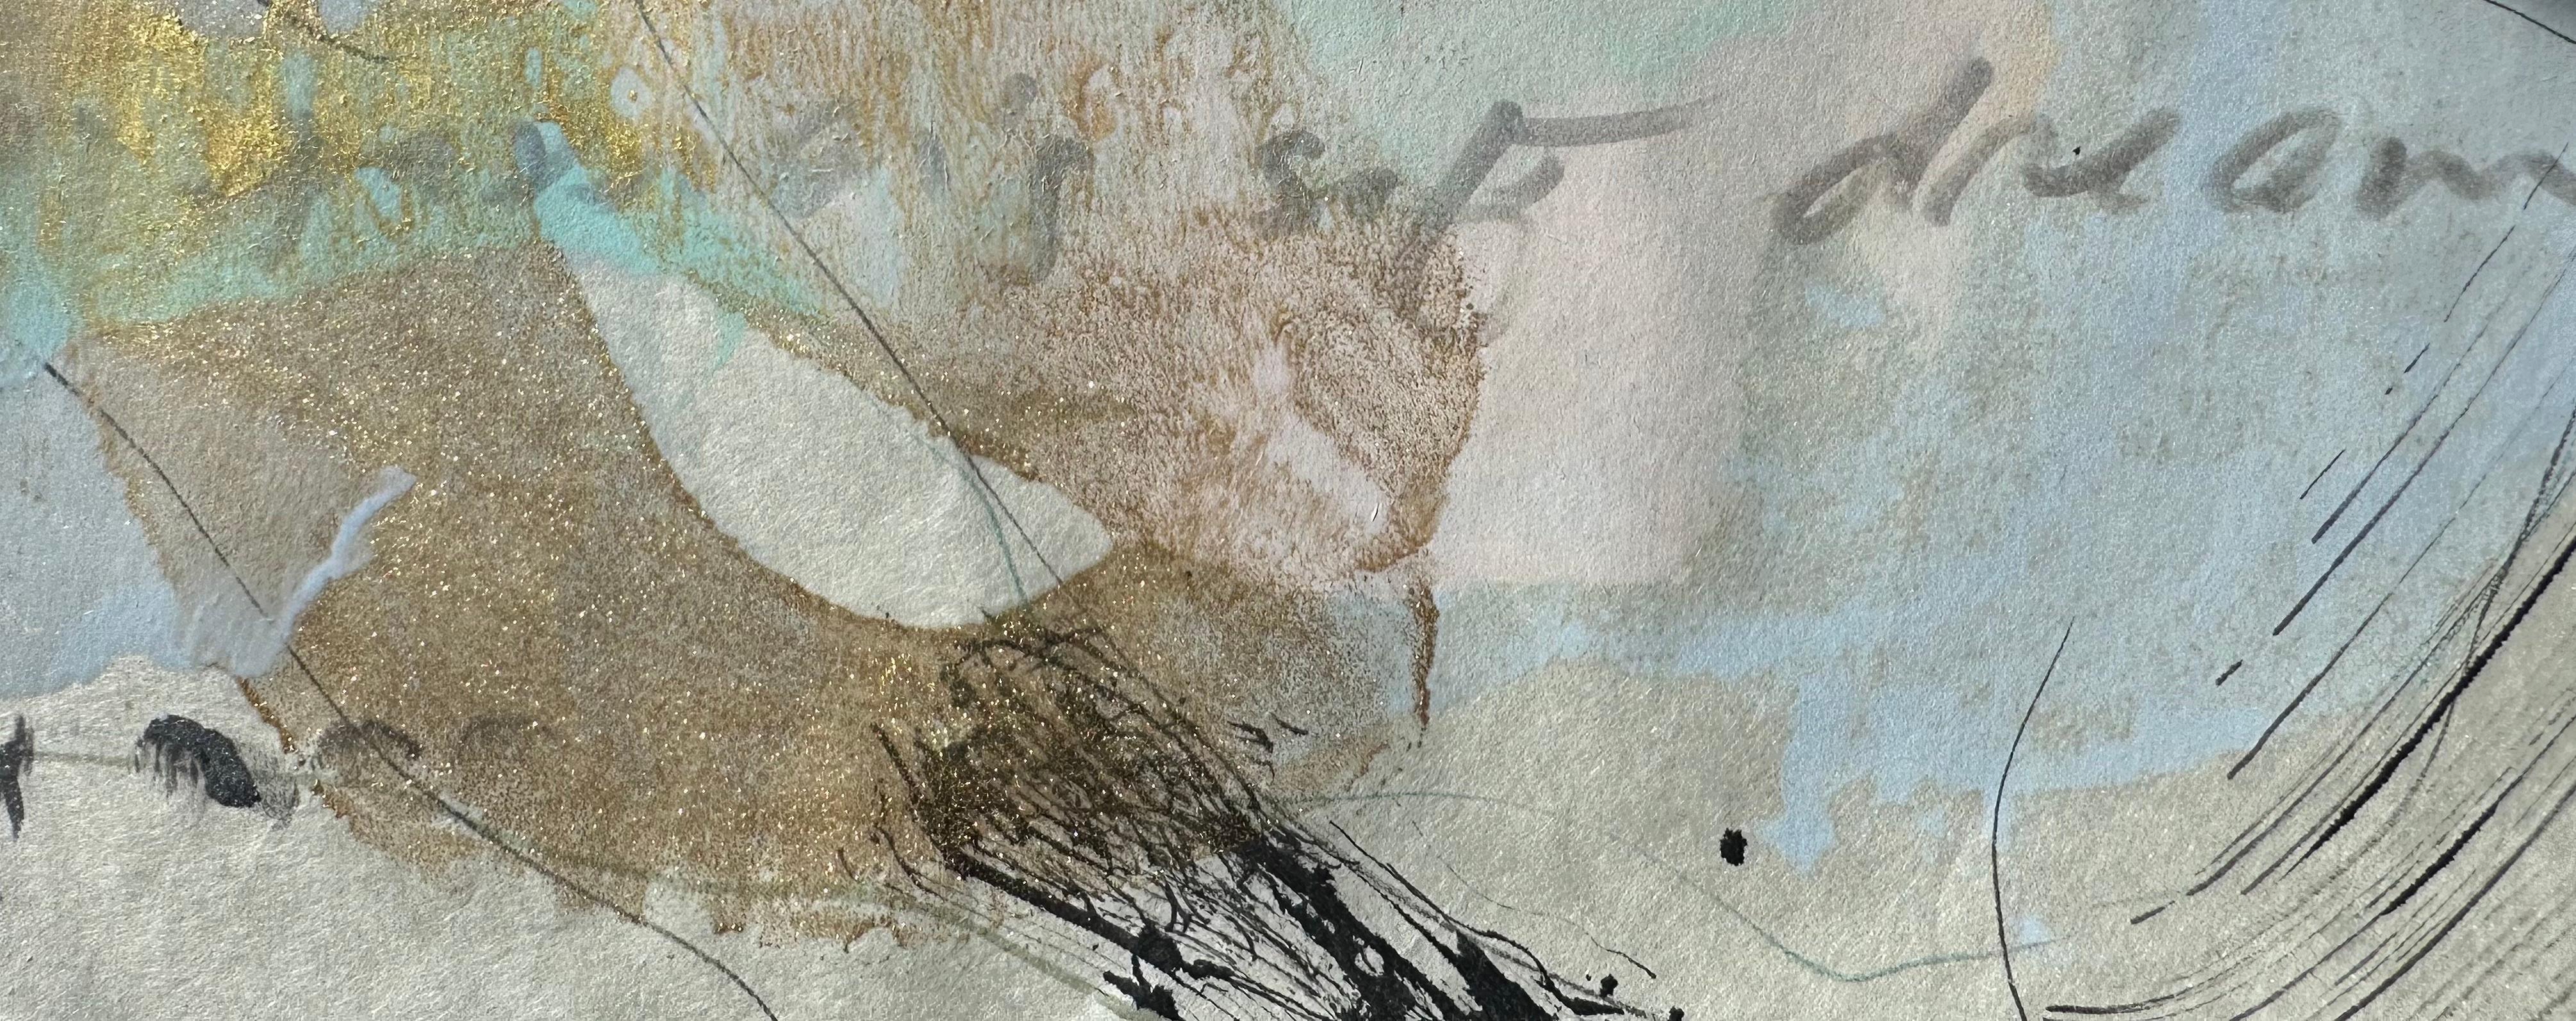 In Passion's Soft Dream kollidieren Farbe, Linie, Form und Textur mit handgeschriebenen romantischen Prosafragmenten auf Kozuke-Elfenbeinpapier. Diese einmalige, unmontierte Enkaustik-Monotypie beleuchtet eine poetische Innenlandschaft. Die